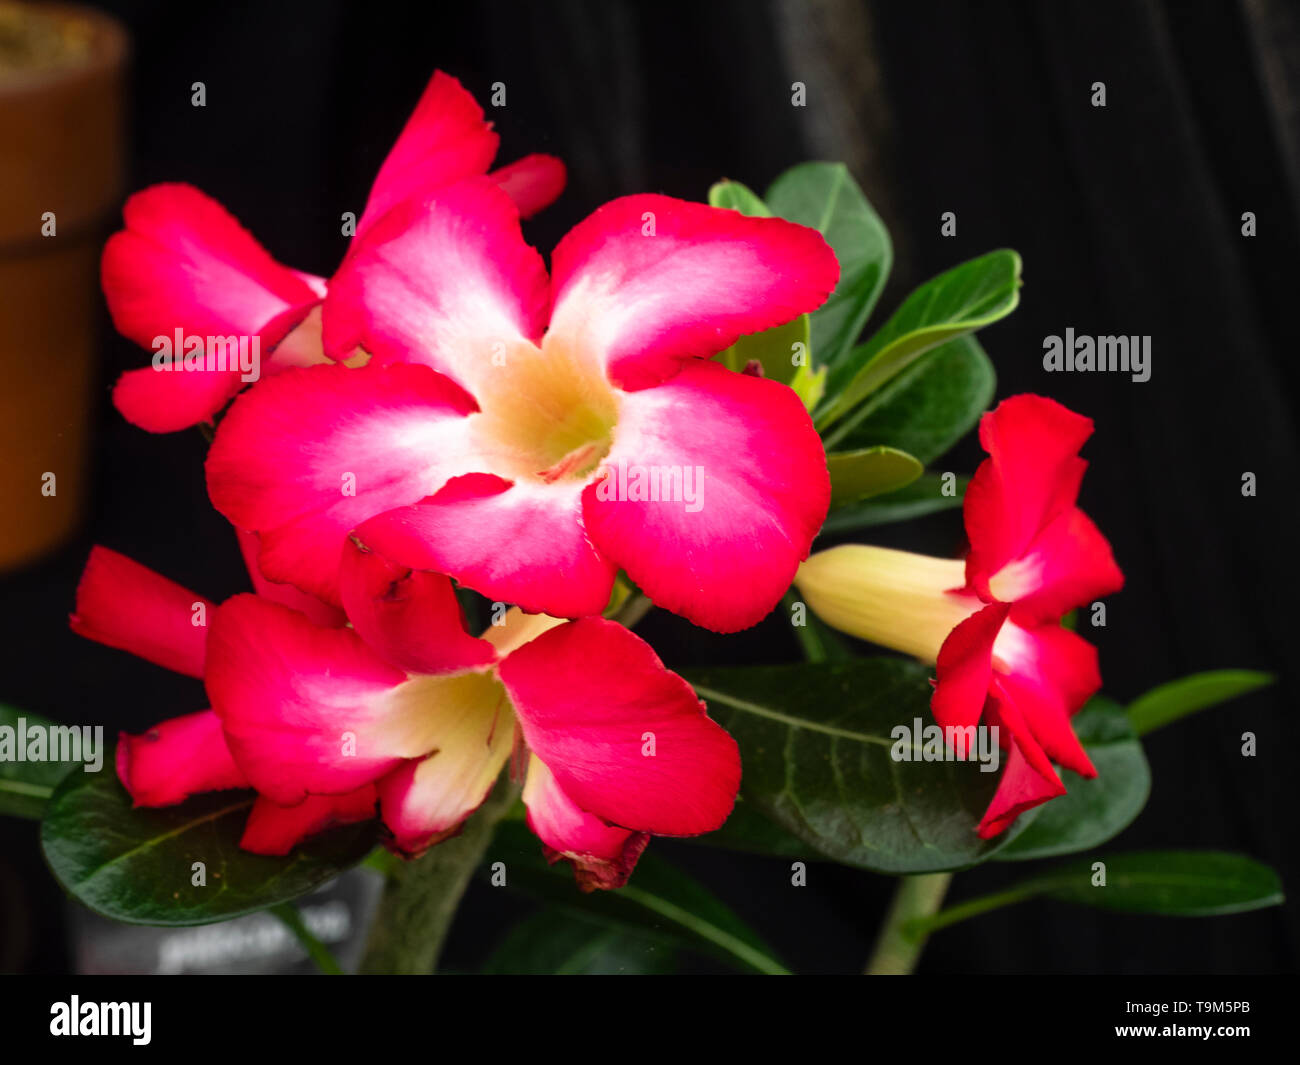 Adenium Obesum la rose du désert rouge velours - Kajuard Plantes